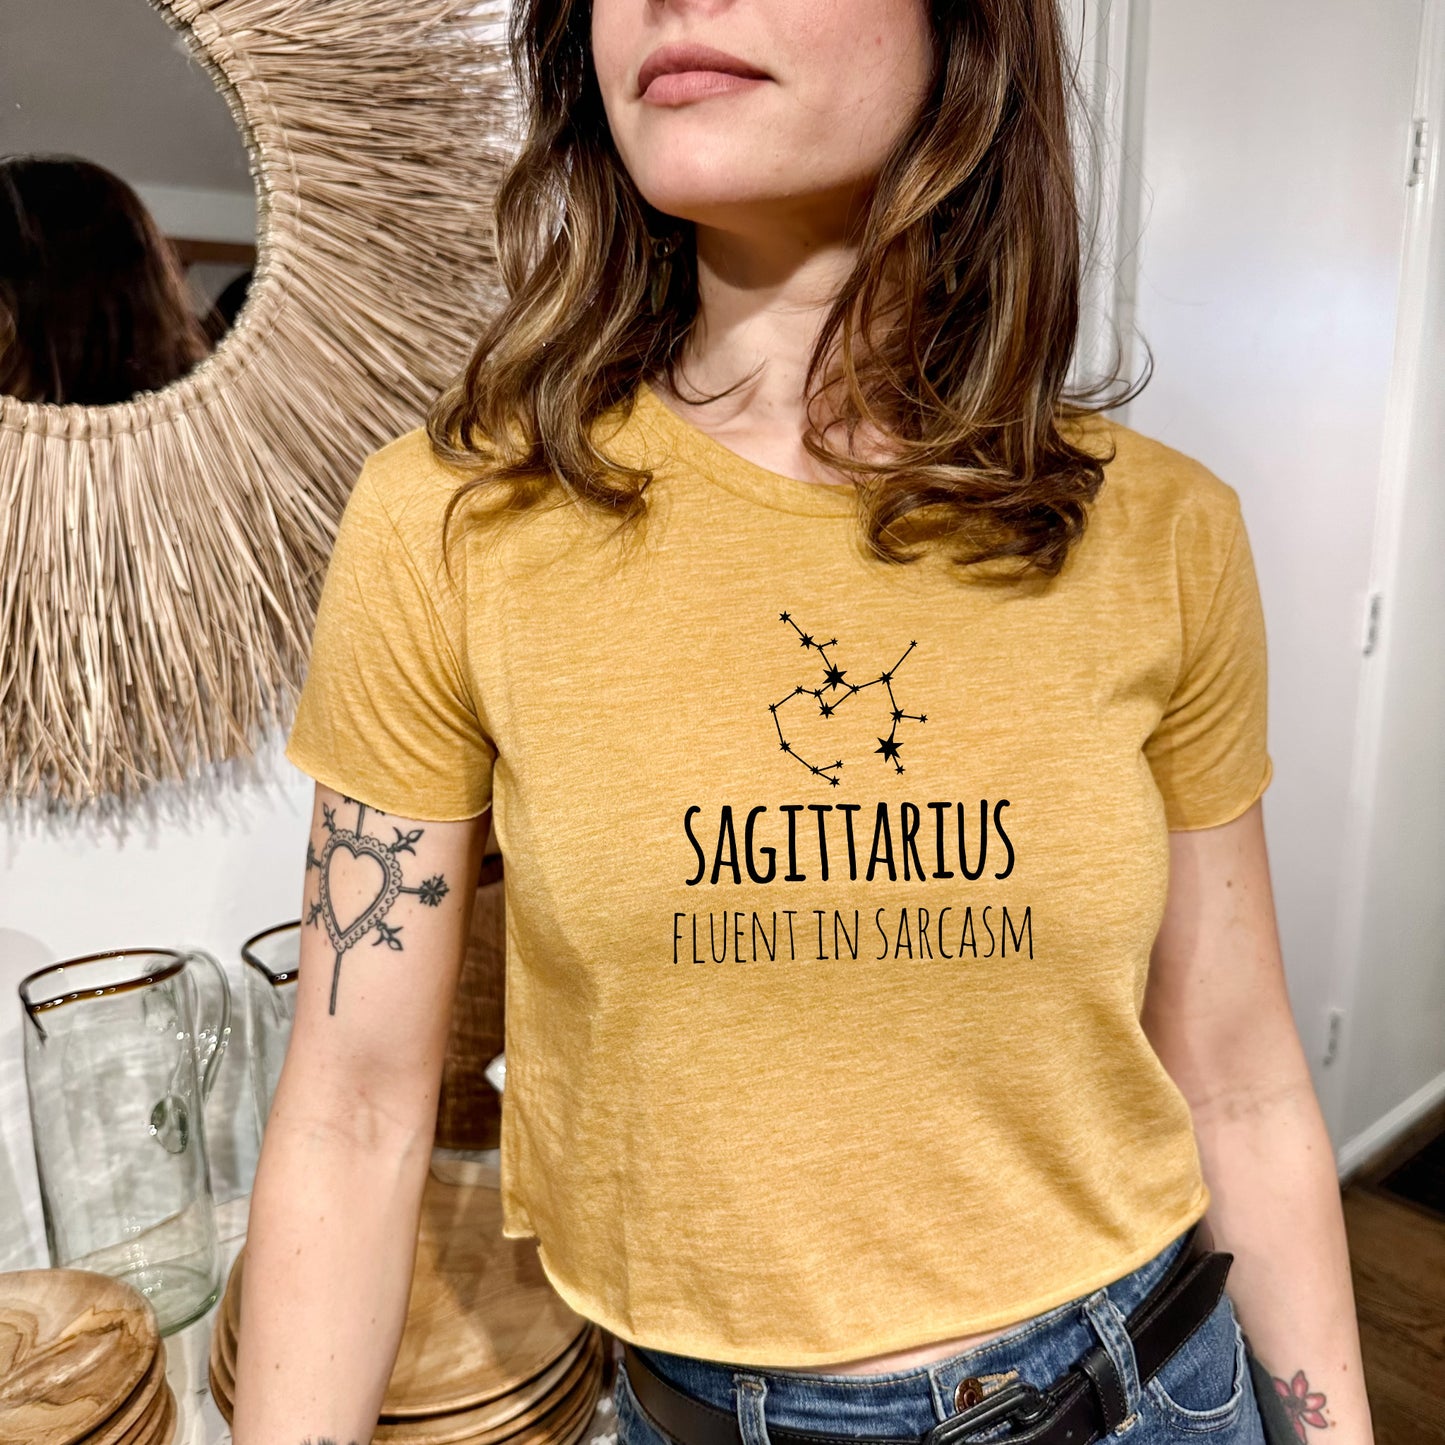 Sagittarius - Women's Crop Tee - Heather Gray or Gold